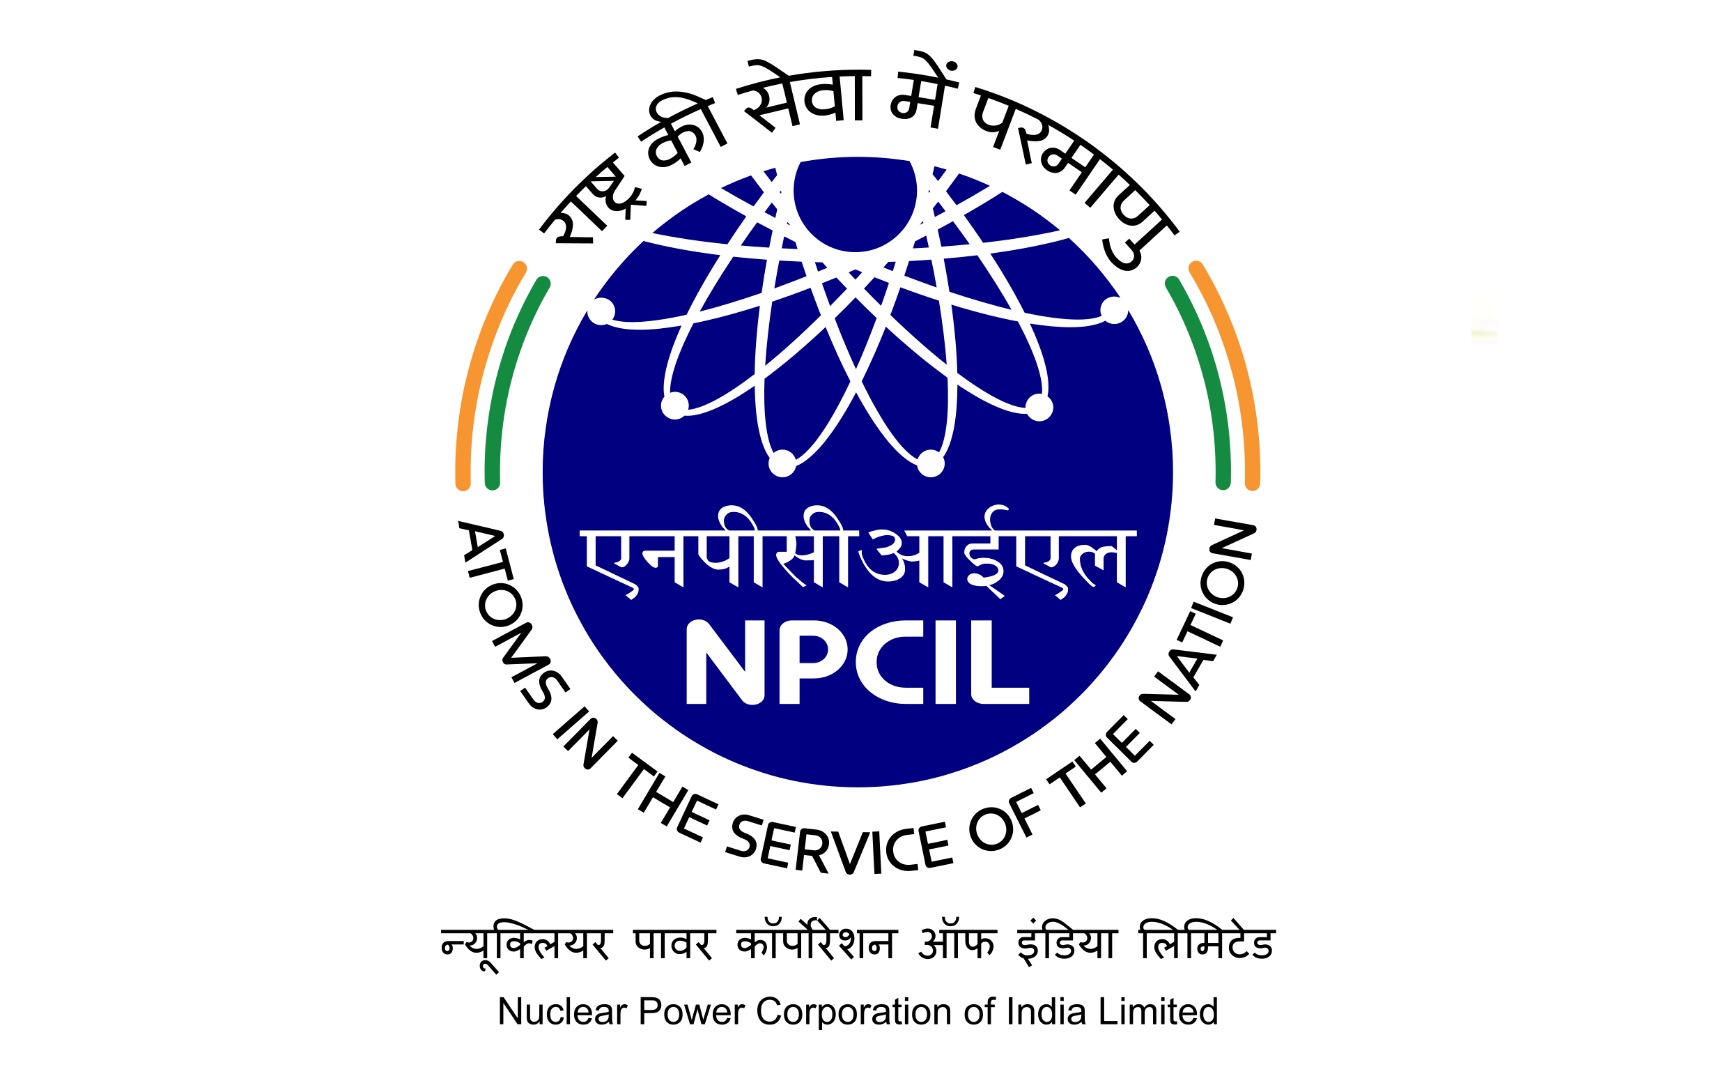 NPCIL Recruitment 2021 न्यूक्लियर पावर कॉर्पोरेशन ऑफ इंडिया लि. मध्ये अप्रेंटिस पदाच्या 250 जागांसाठी भरती